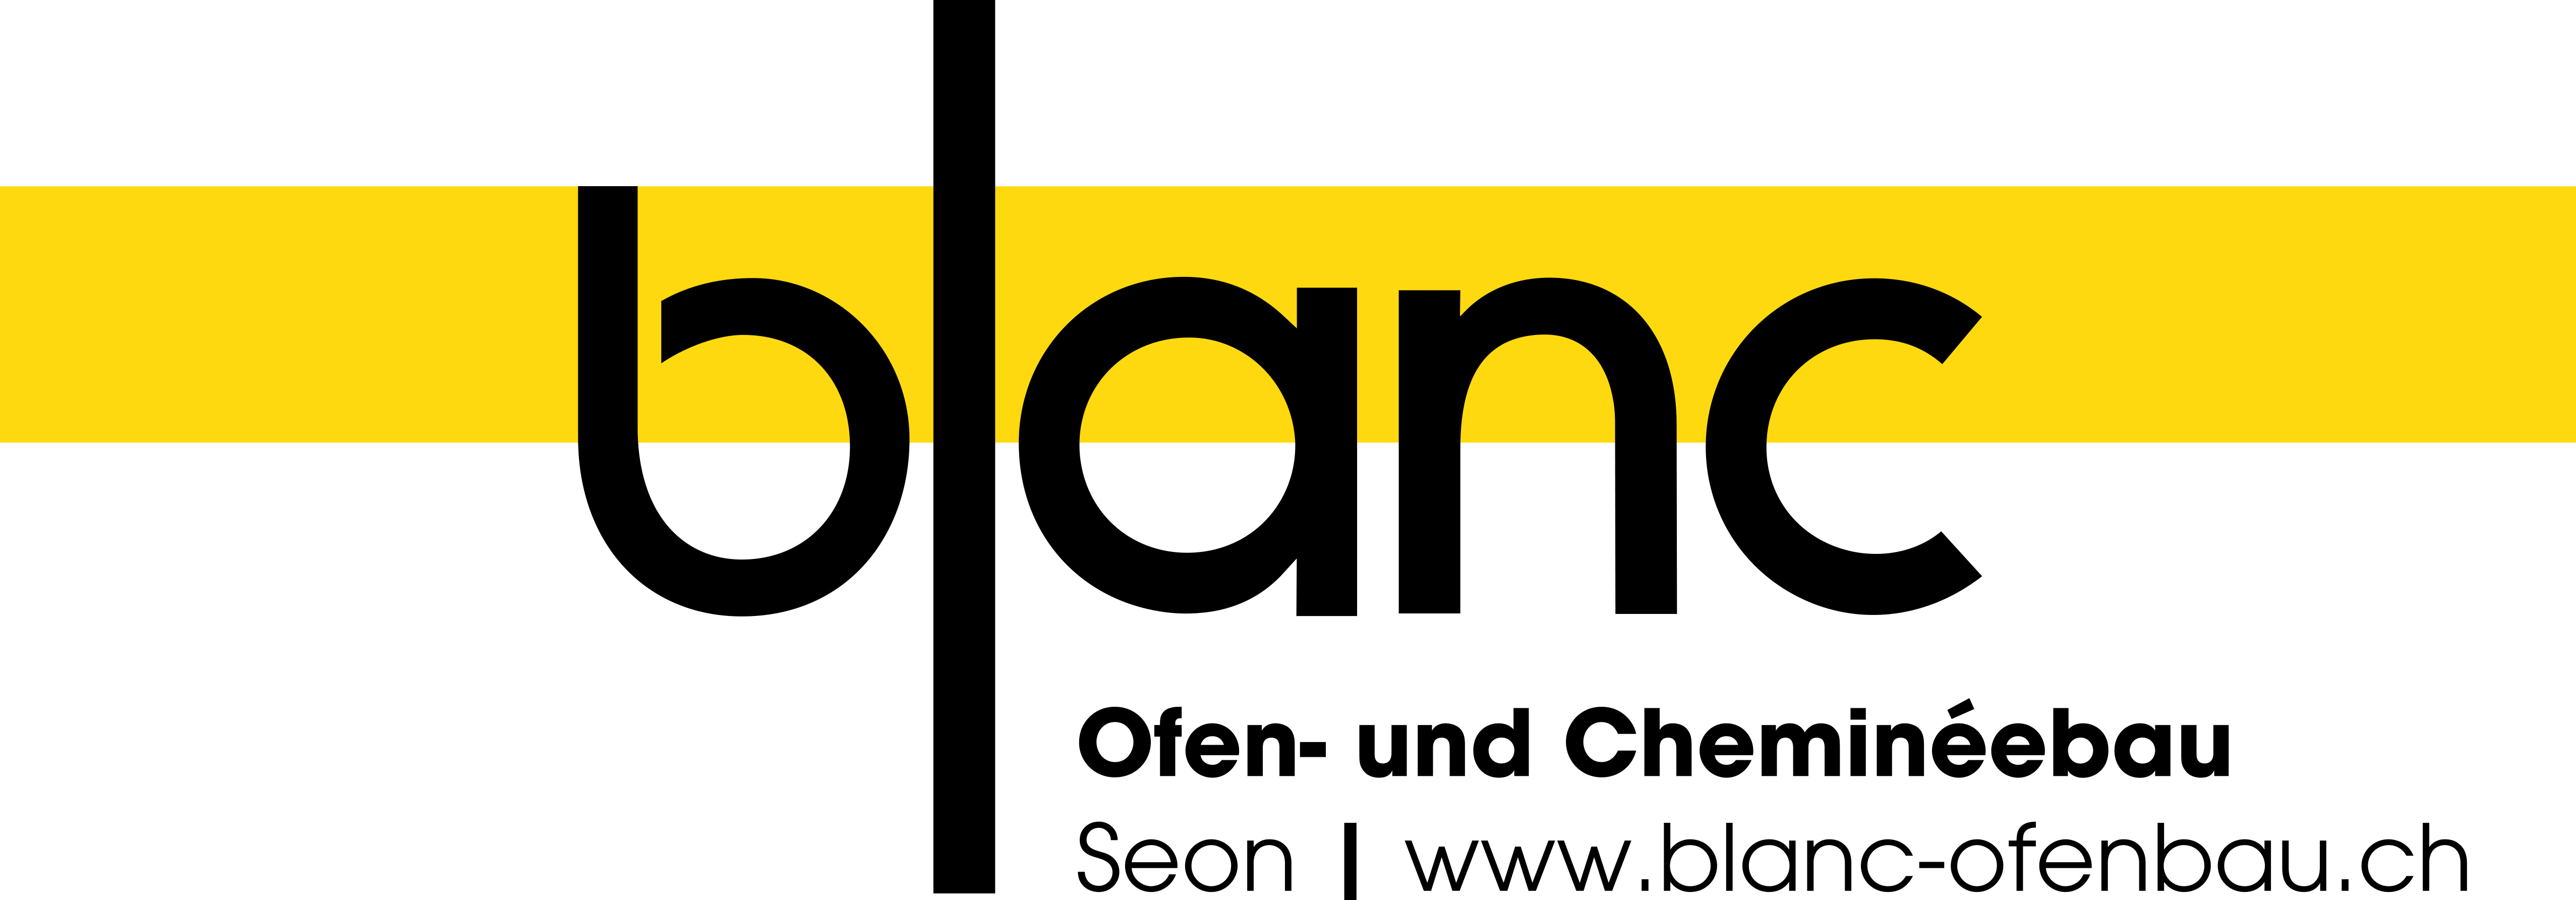 Blanc Ofen- und Cheminéebau AG